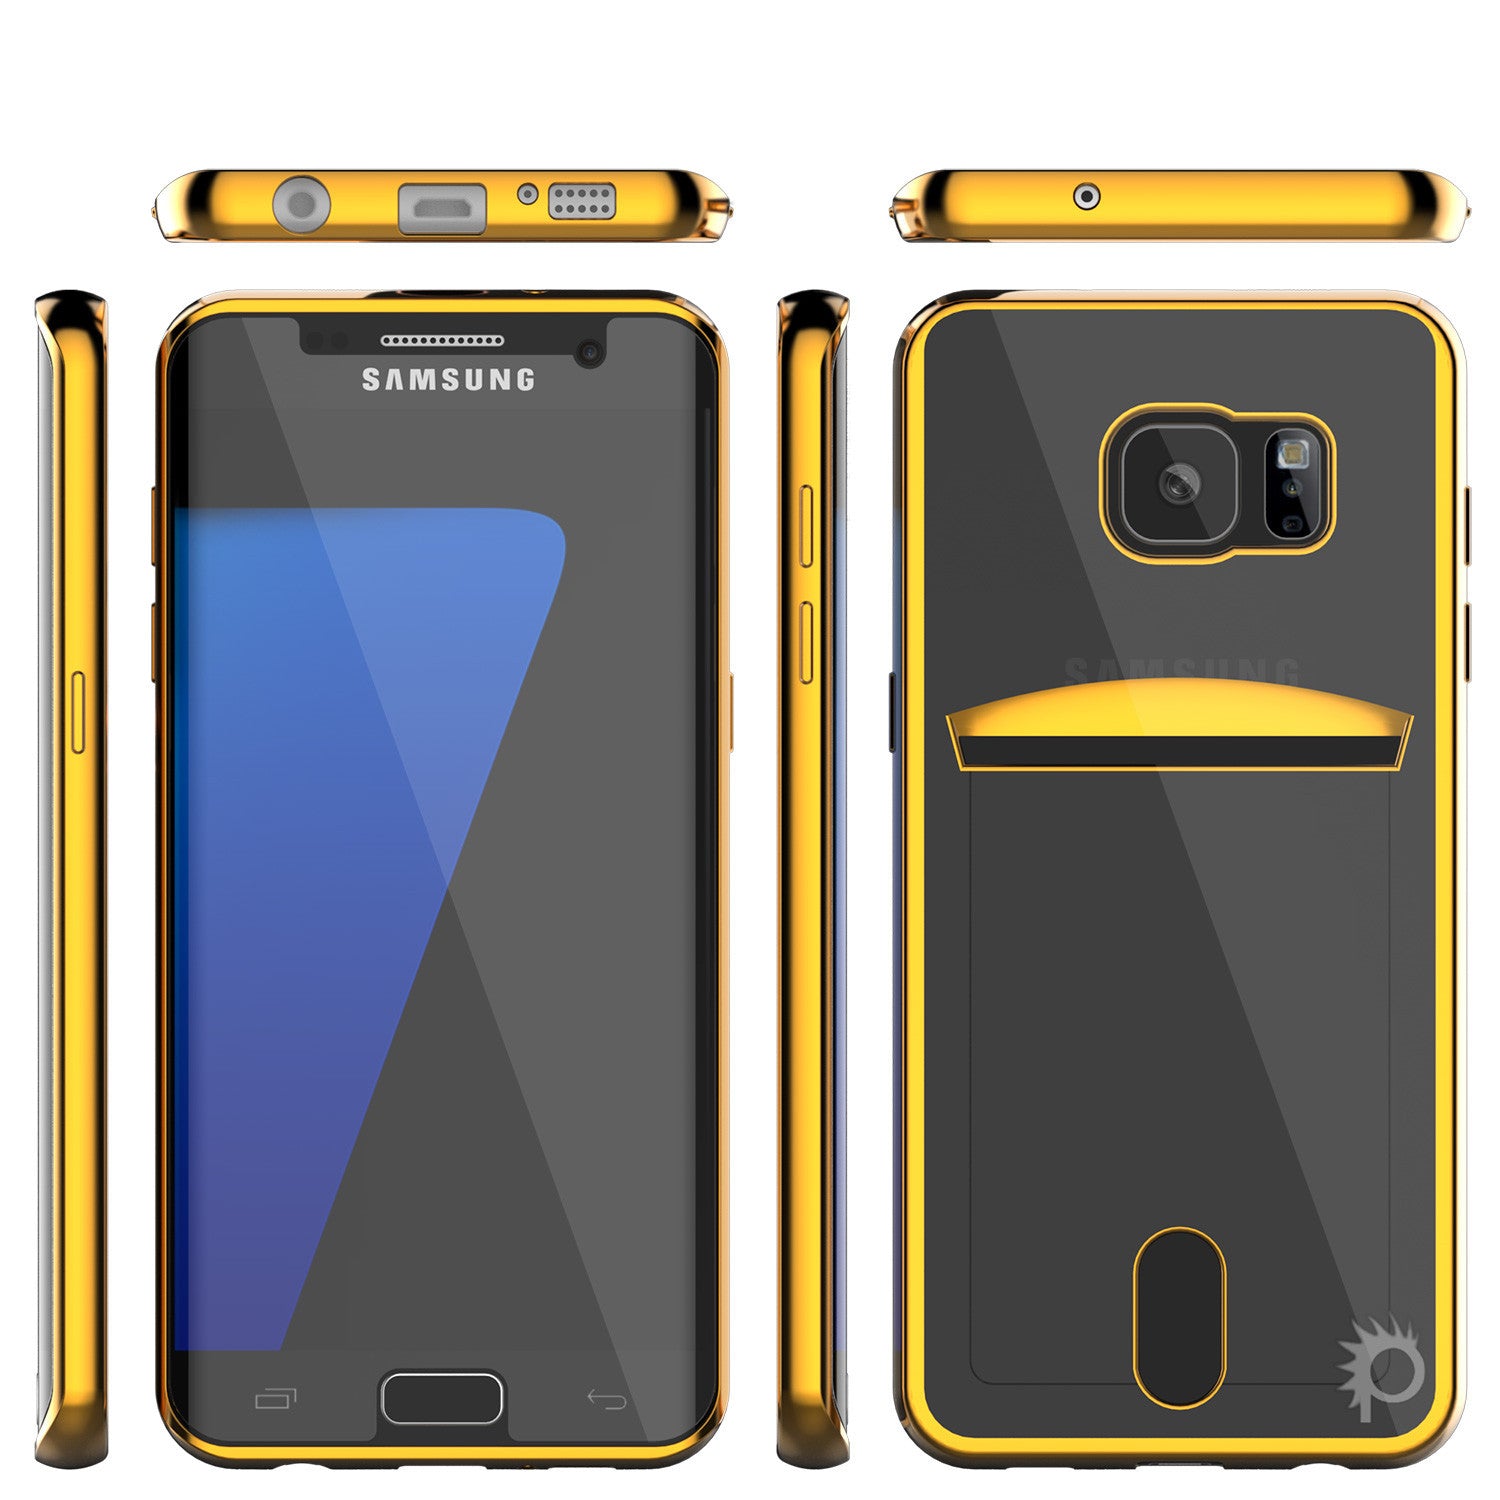 PUNKCASE - Lucid Series Premium Impact Case for Samsung S7 Edge | Gold